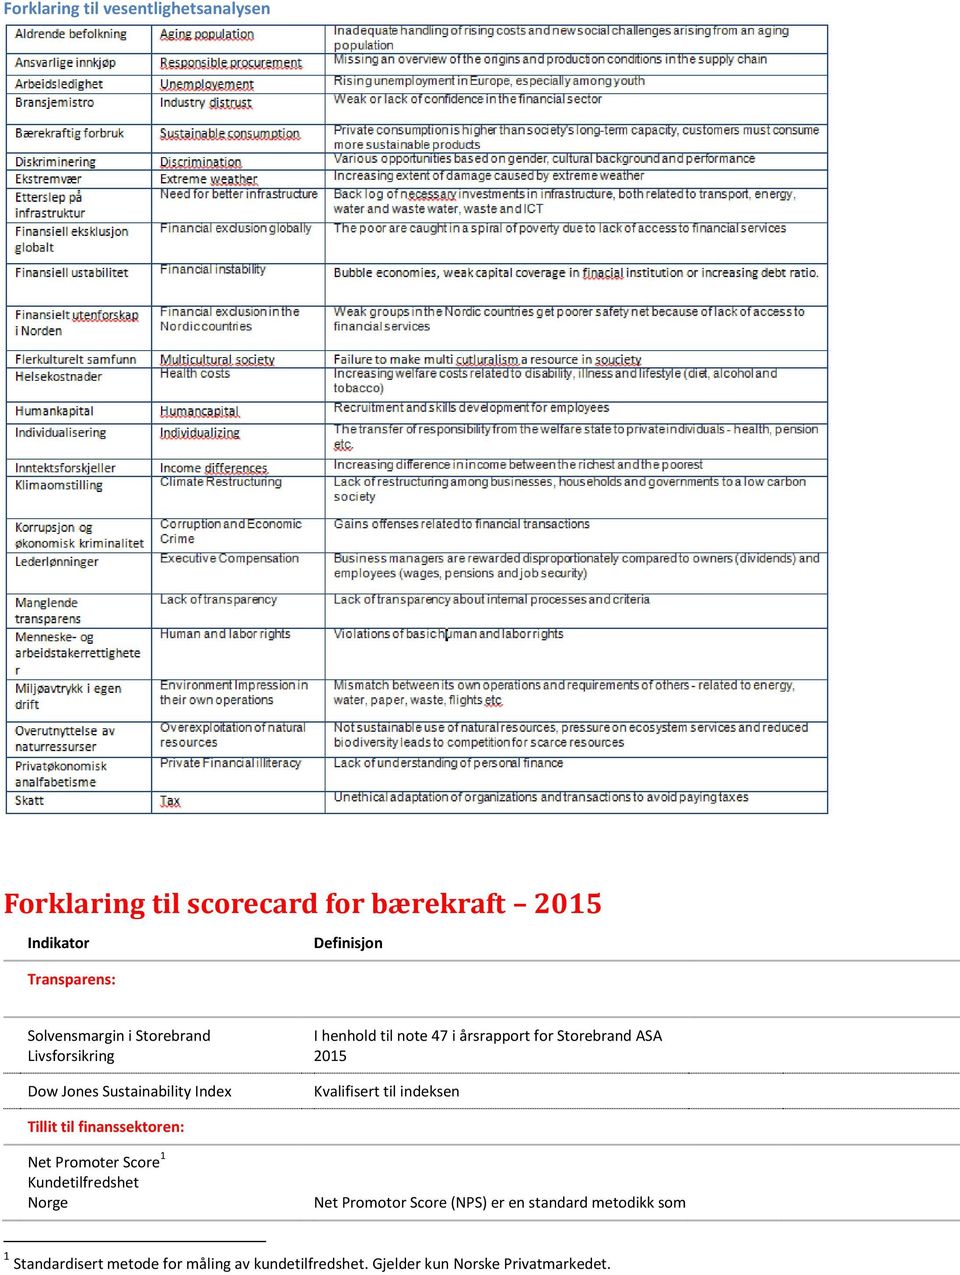 Storebrand ASA 2015 Kvalifisert til indeksen Tillit til finanssektoren: Net Promoter Score 1 Kundetilfredshet Norge Net